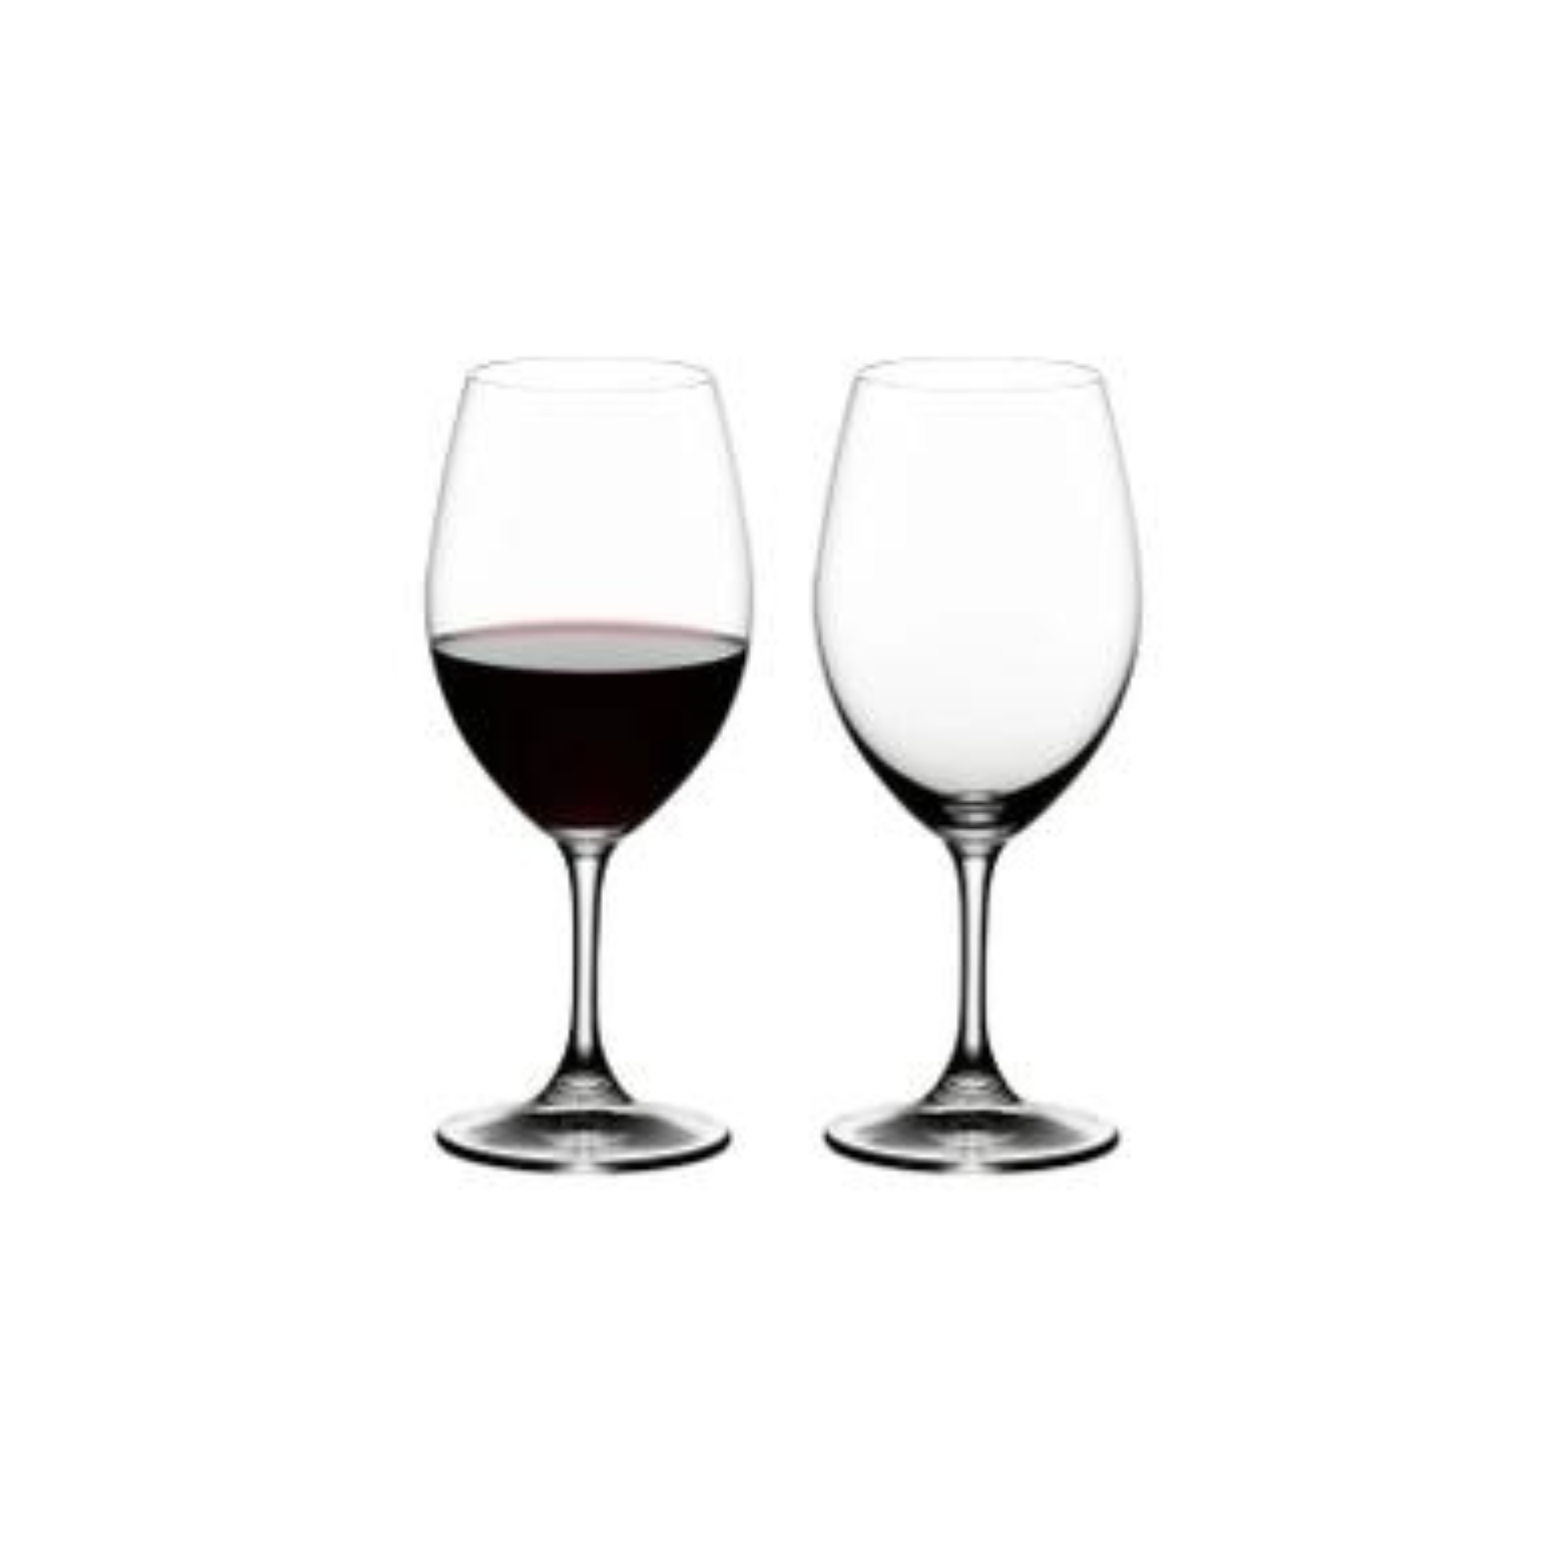 2 accessoires pour boire du vin dans son bain - Avenue des Vins